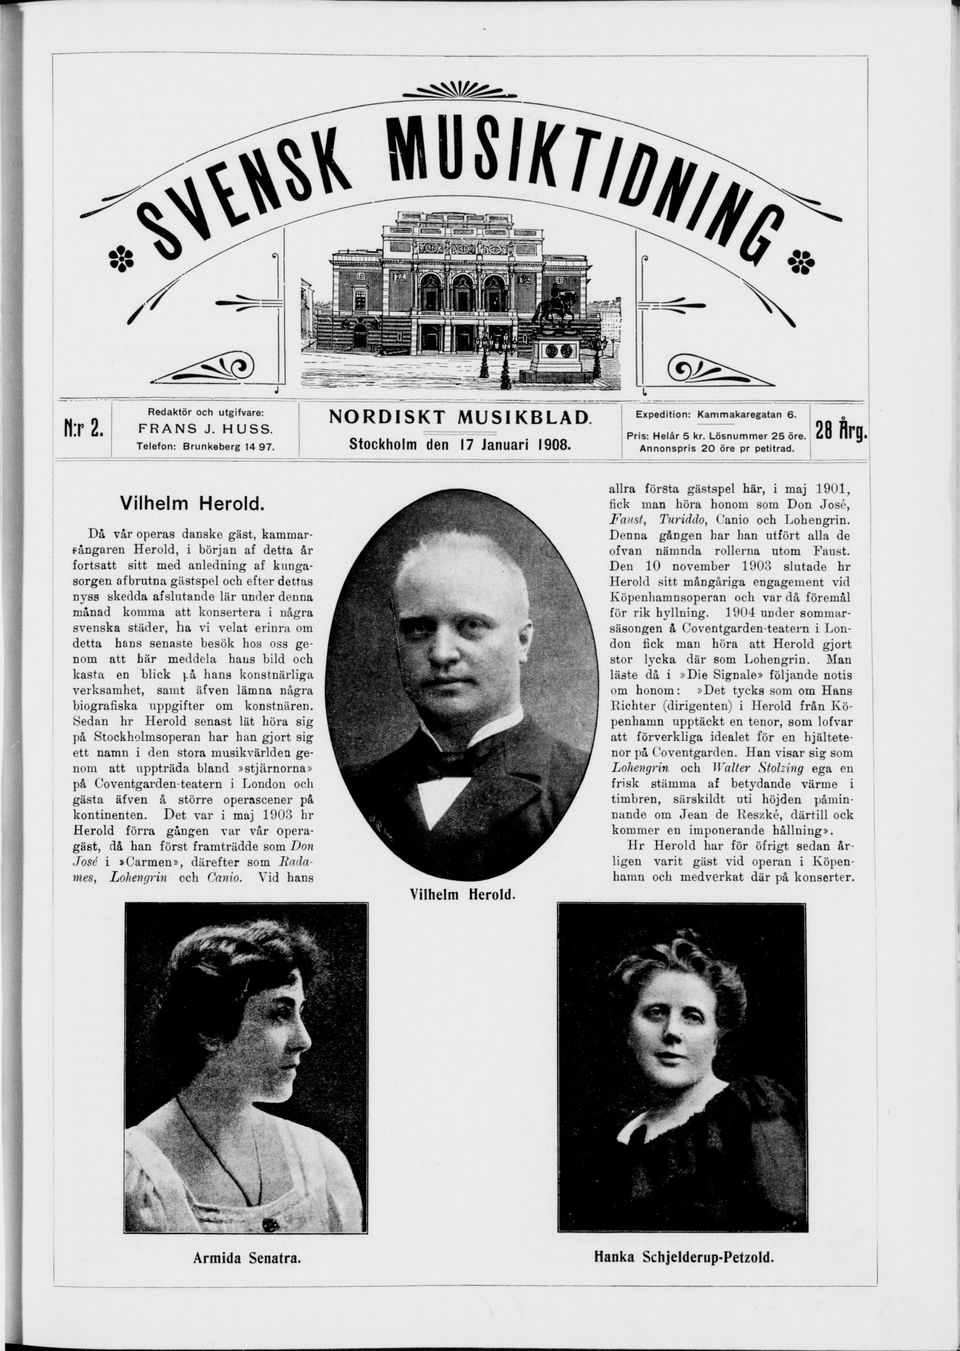 Denna gången har han utfört alla de ofvan nämnda rollerna utom Faust. Den 10 november 1903 slutade hr Herold sitt mångåriga engagement vid Köpenhamnsoperan och var då föremål för rik hyllning.